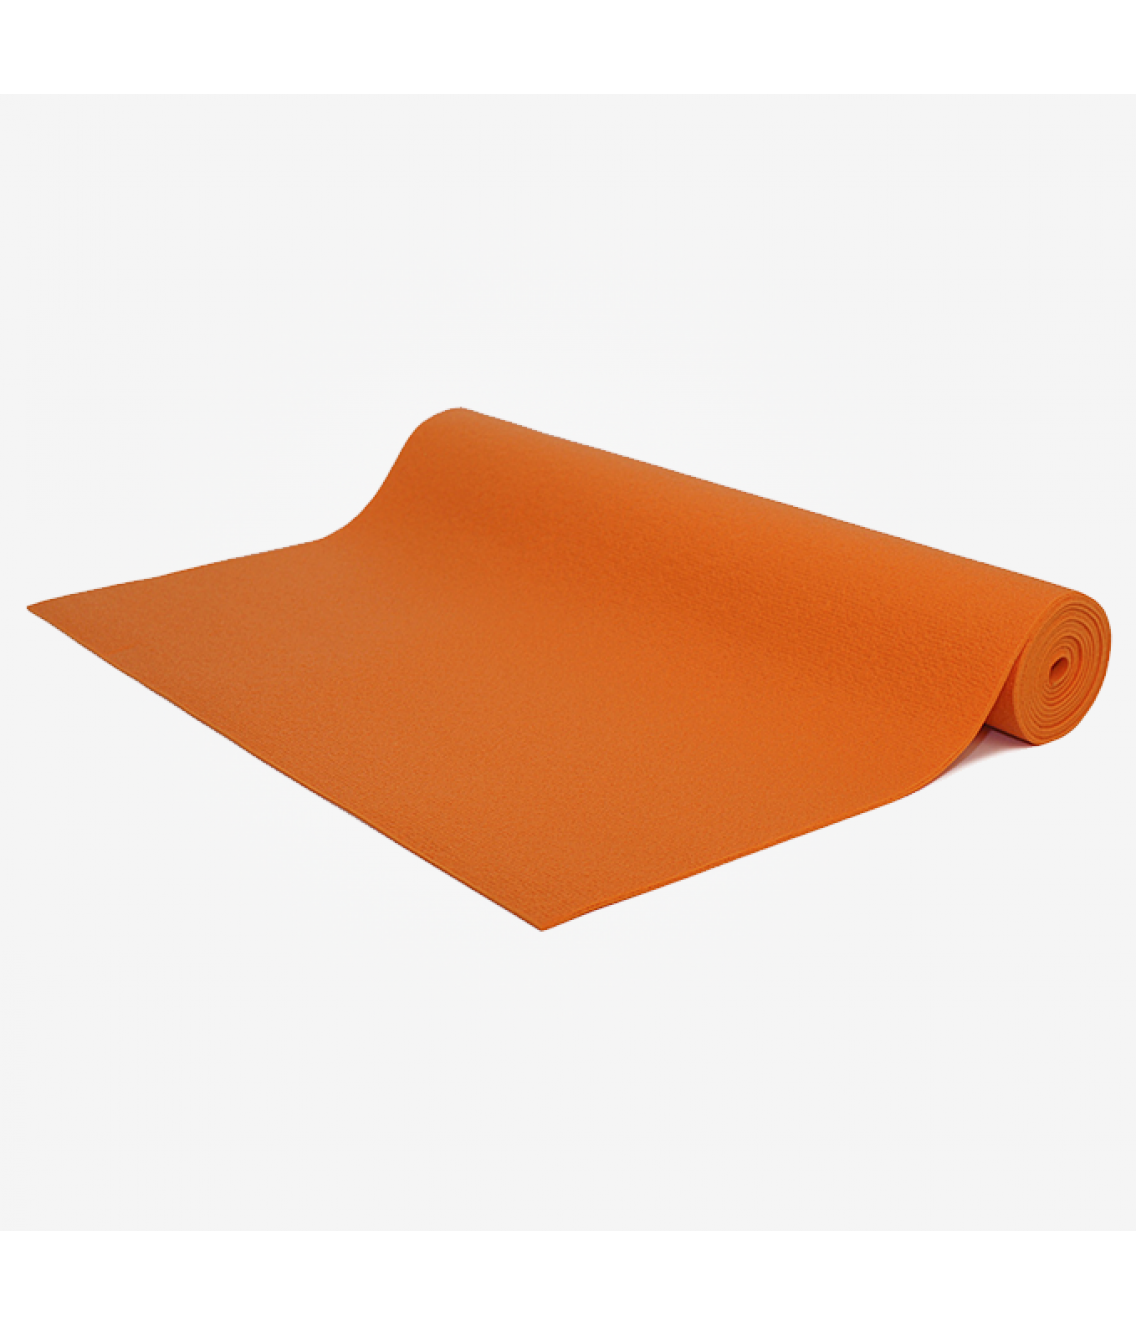 Коврик для йоги Bodhi Kailash 175см 60см 3мм оранжевый